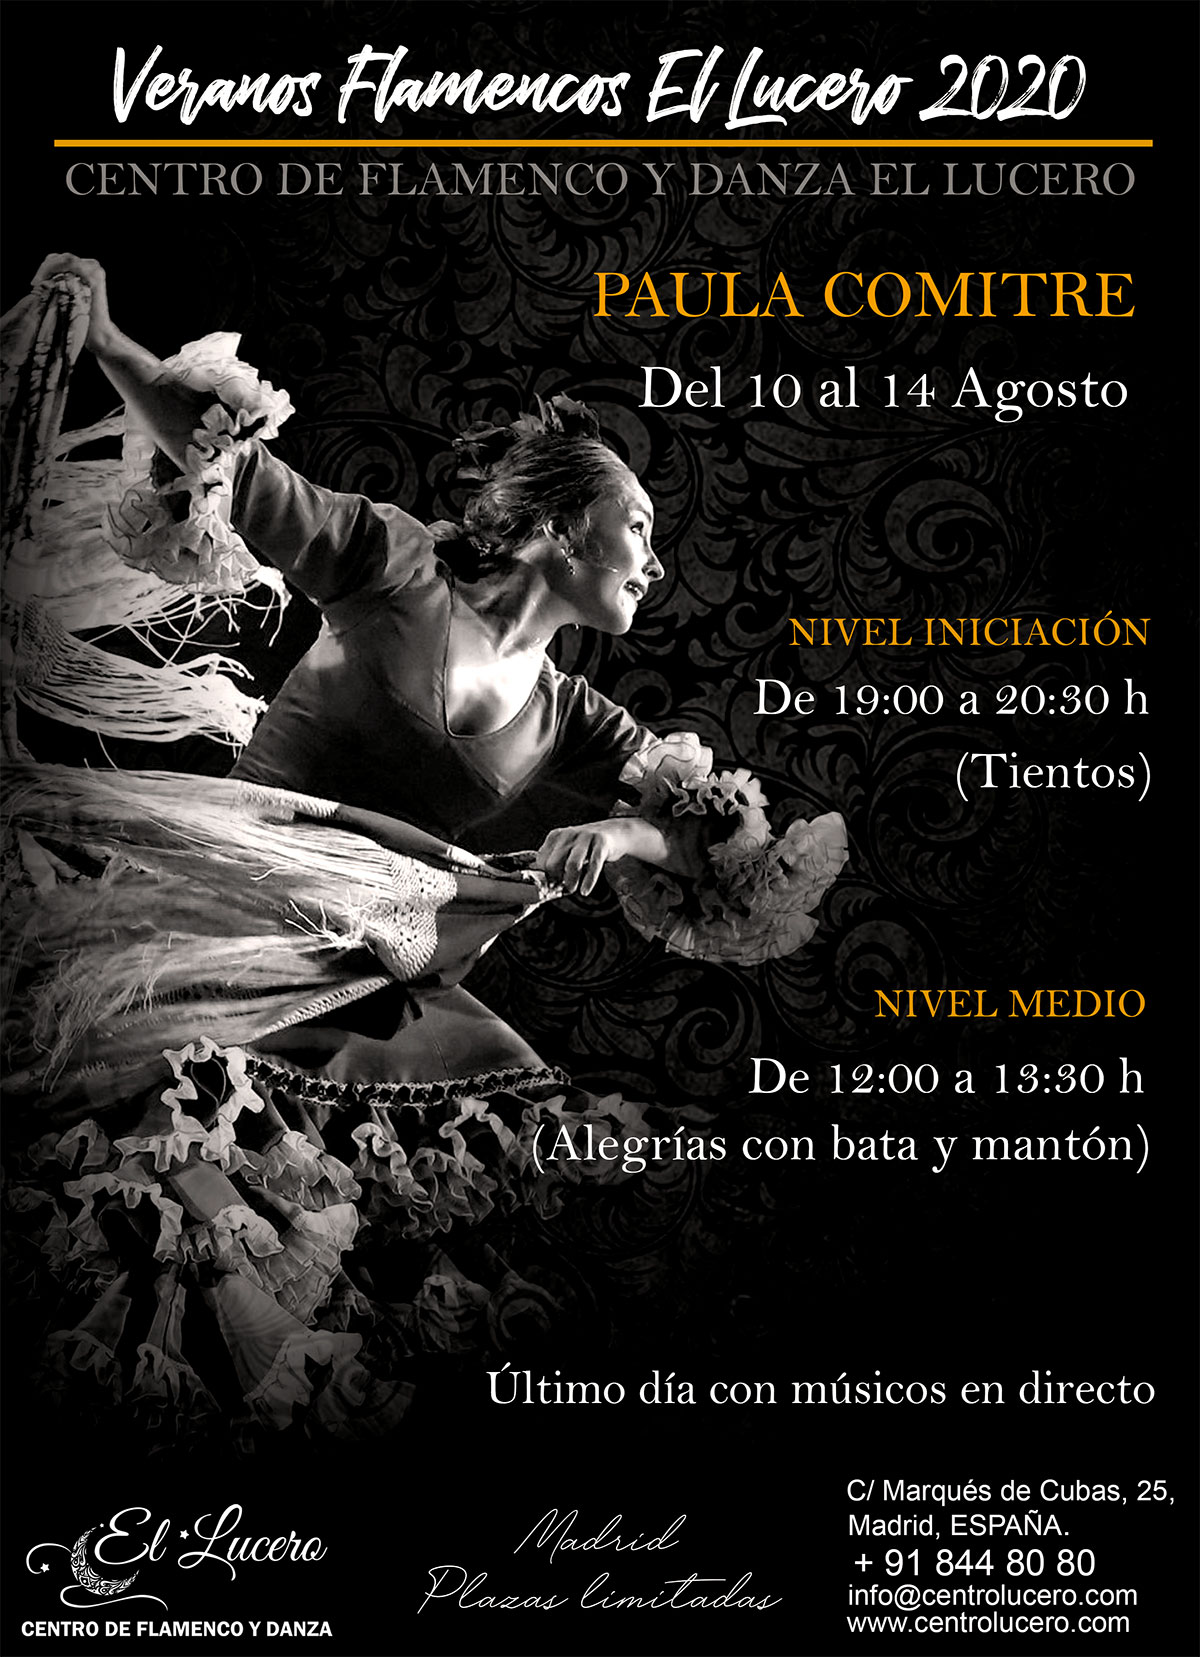 Veranos Flamencos EL LUCERO - Paula Comitre